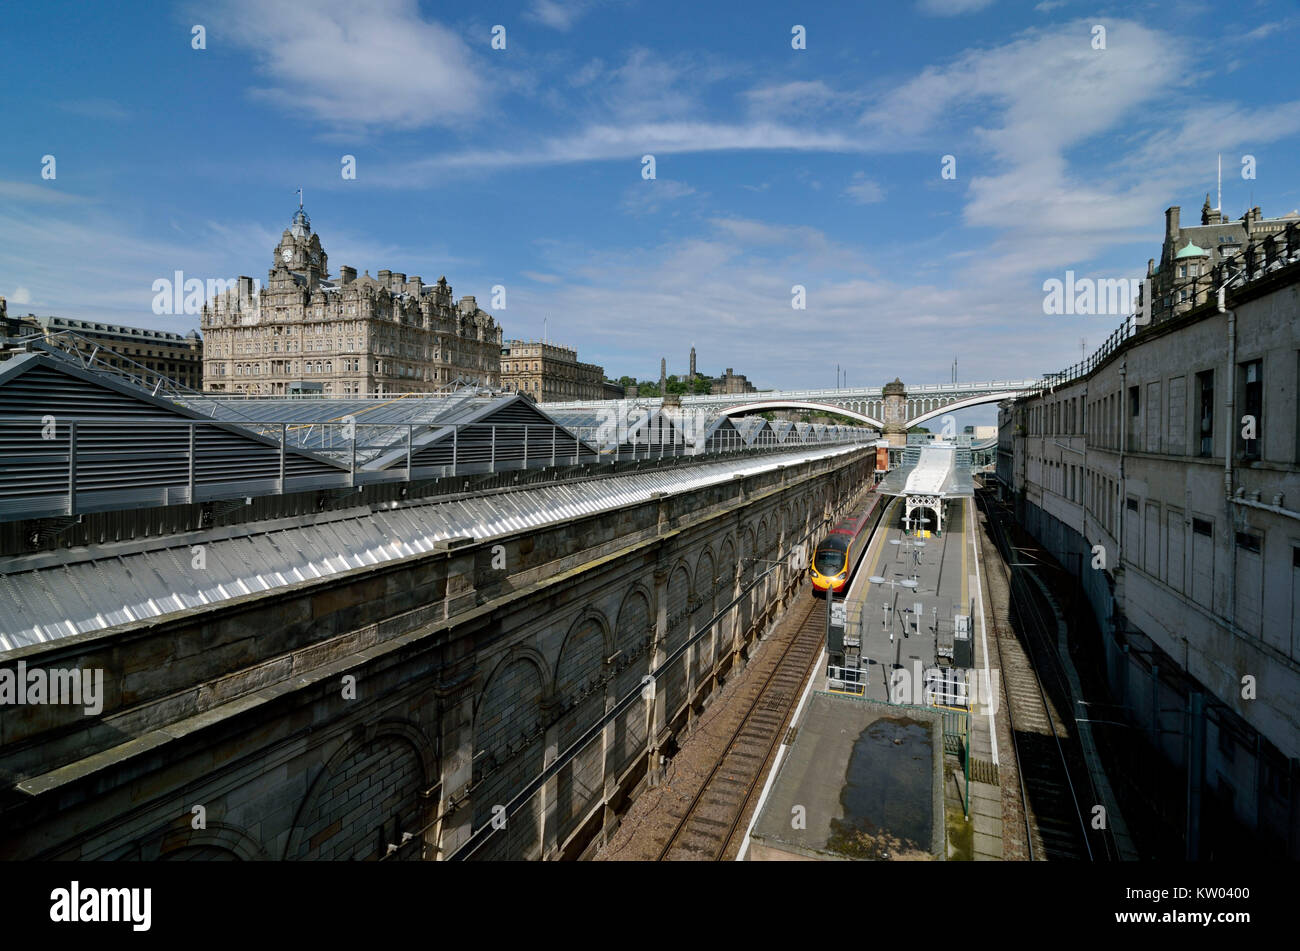 Scotland, Edinburgh, North bridge and railway station Waverley, Schottland, North bridge und Bahnhof Waverley Stock Photo